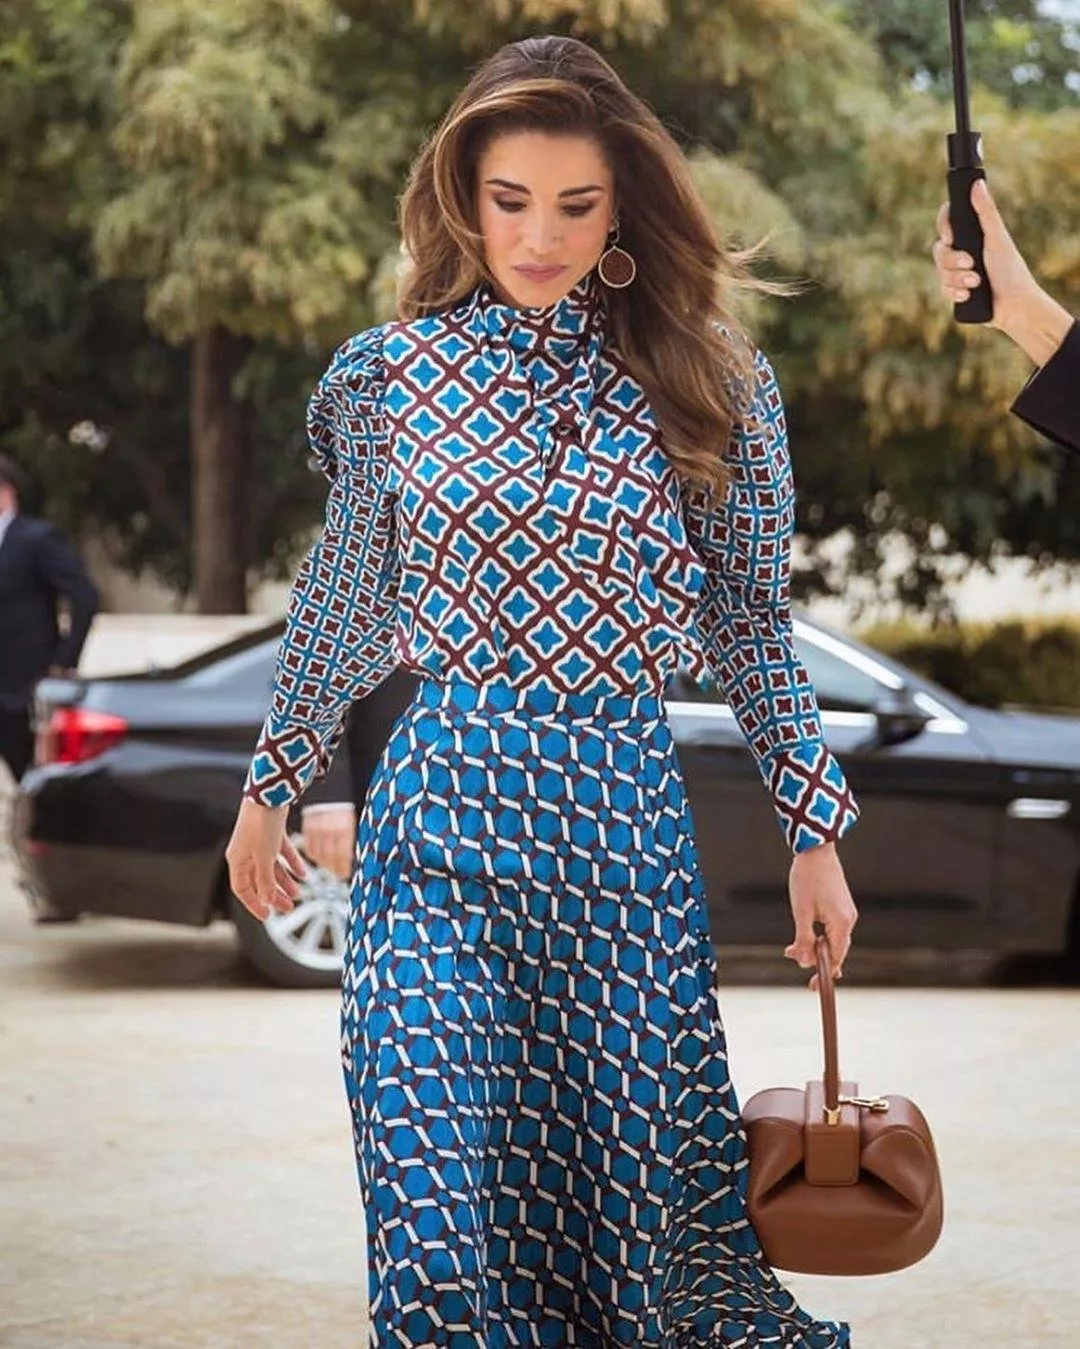 حصاد 2019: أجمل إطلالات الملكة رانيا خلال هذه السنة